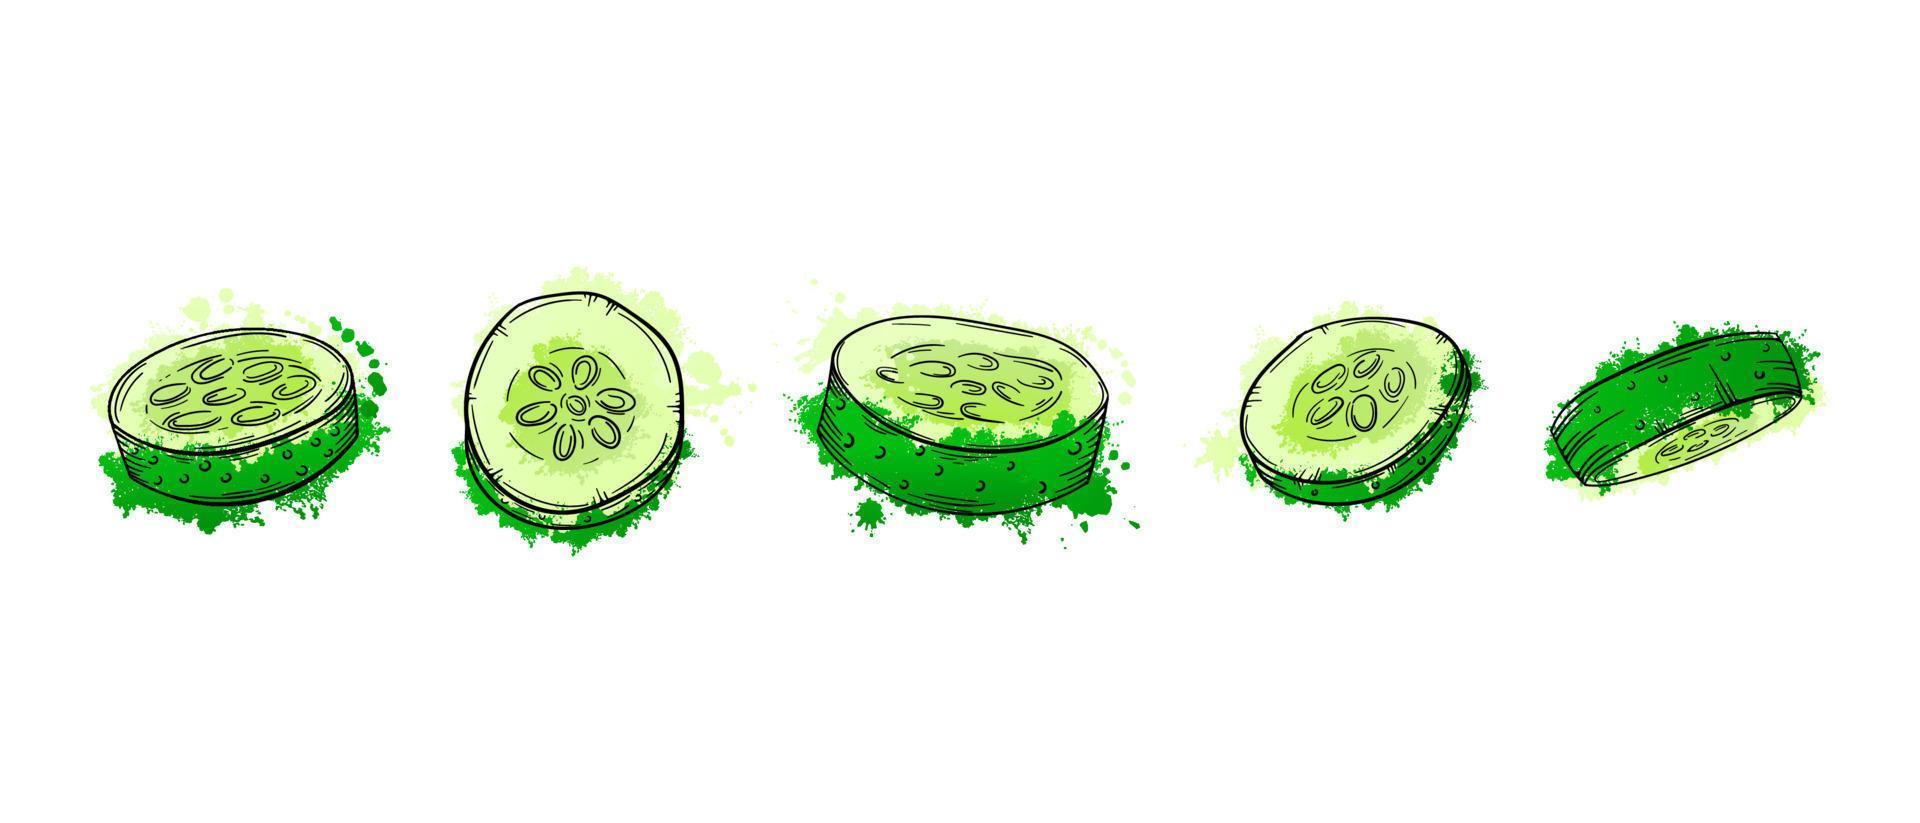 pepino en rodajas de verduras. boceto dibujado a mano pintura acuarela verde sobre fondo blanco. Ilustración de vector gráfico de textura grunge. para menú, afiche, pizza o receta de ensalada